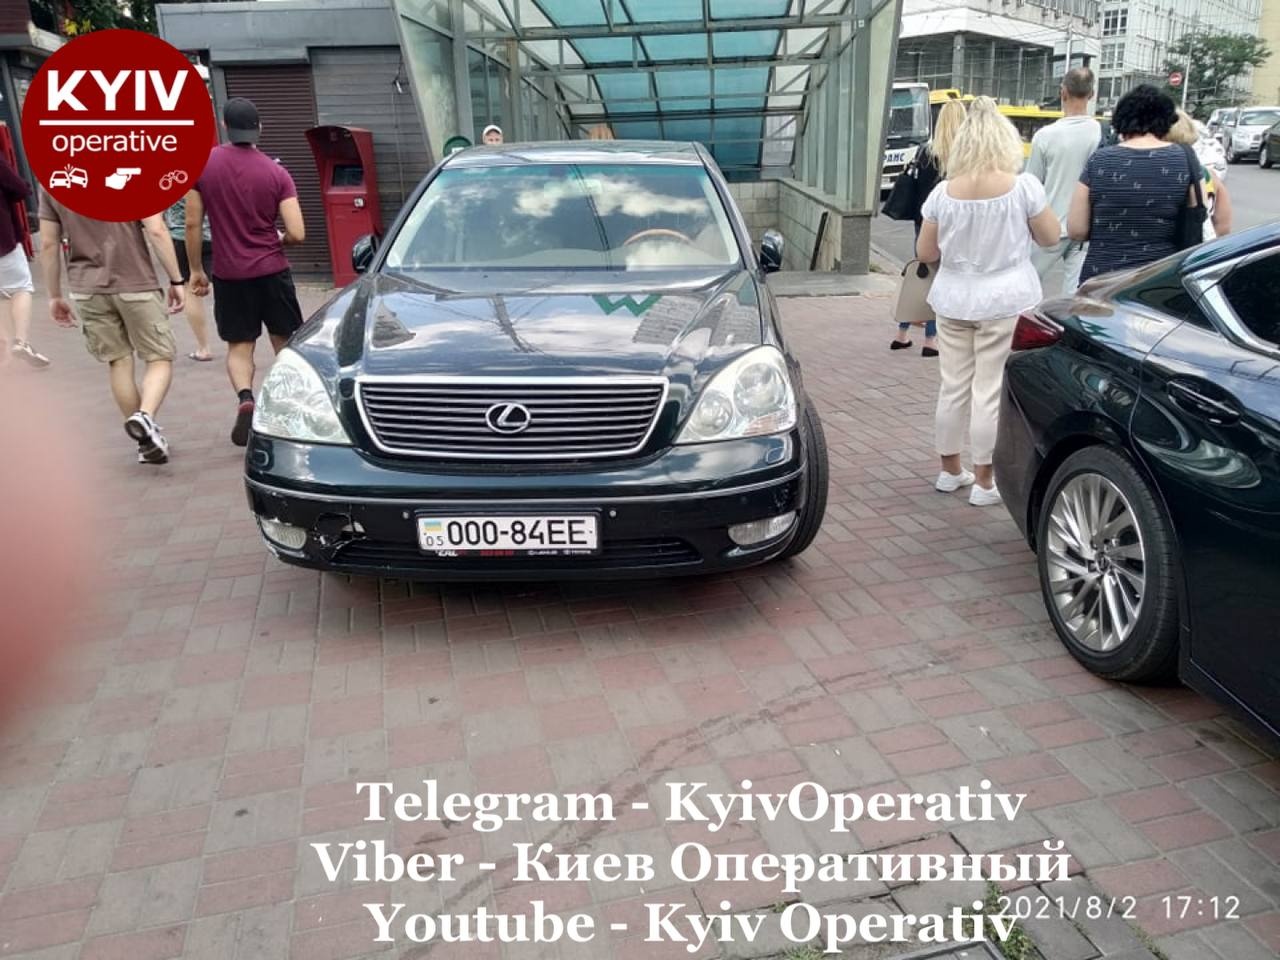 В Киеве "герой парковки" на Lexus "нестандартно" поставил авто у входа в метро